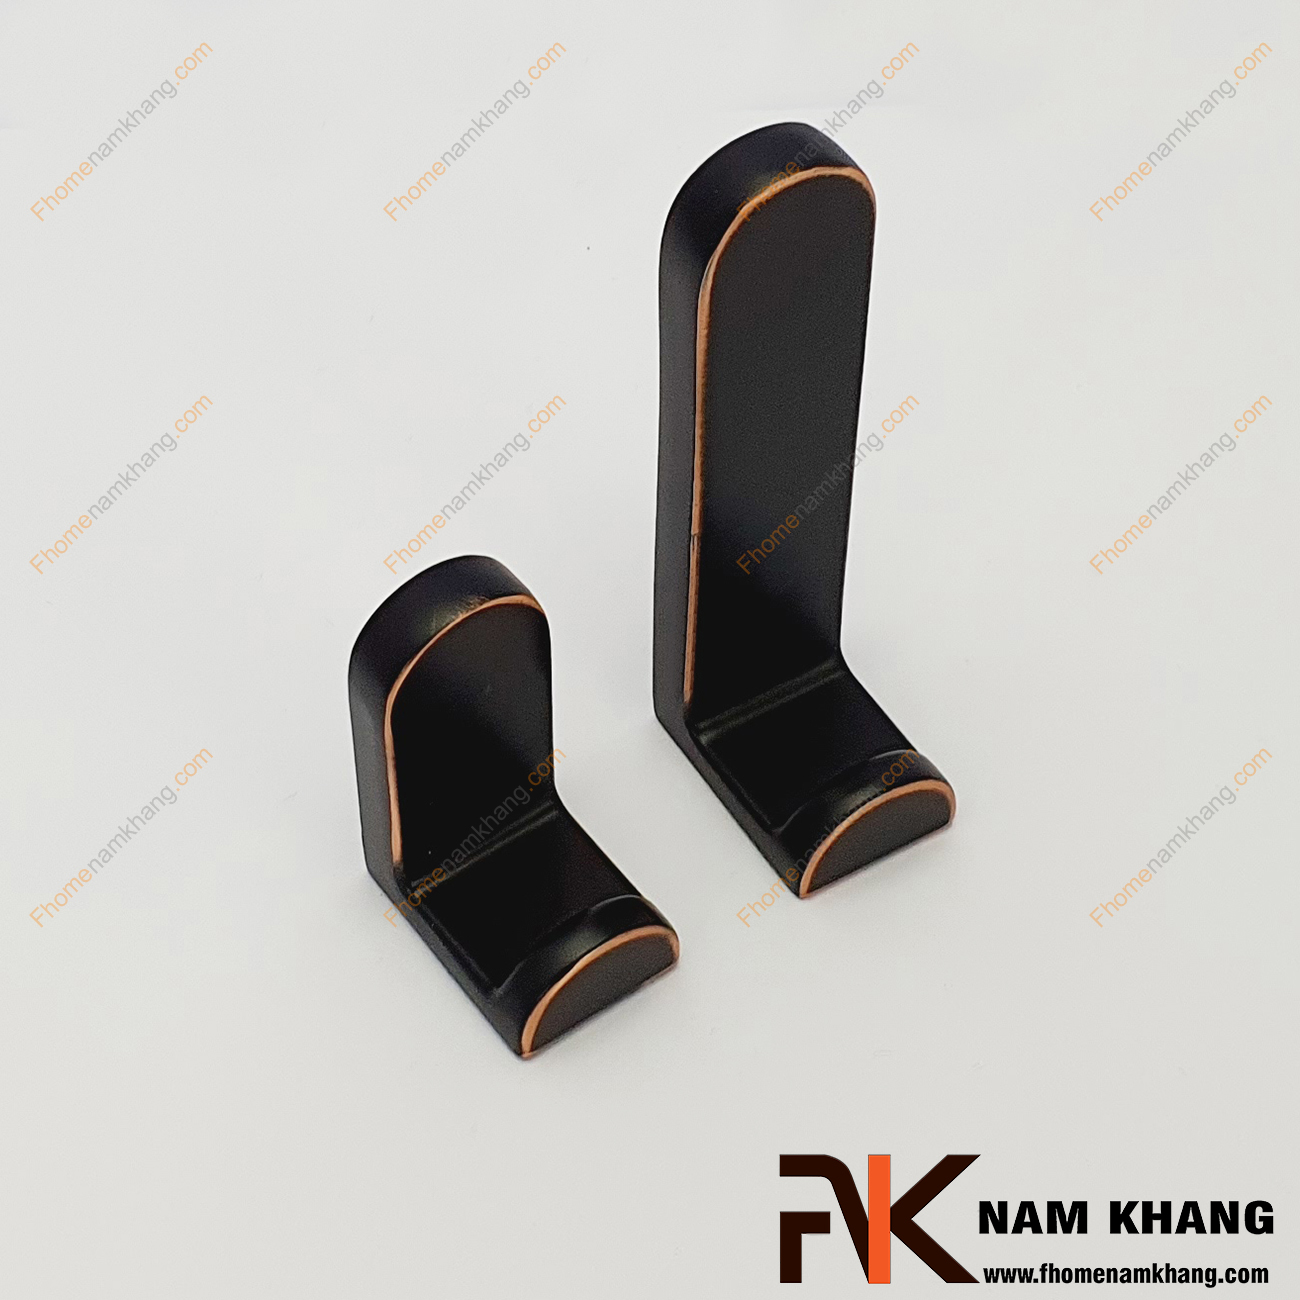 Móc treo tường dạng đứng màu đen NK121L-DH, dòng móc treo kiểu đứng có thiết kế liền khối gồm 2 size lớn nhỏ và có thể lắp ghép thành một bộ